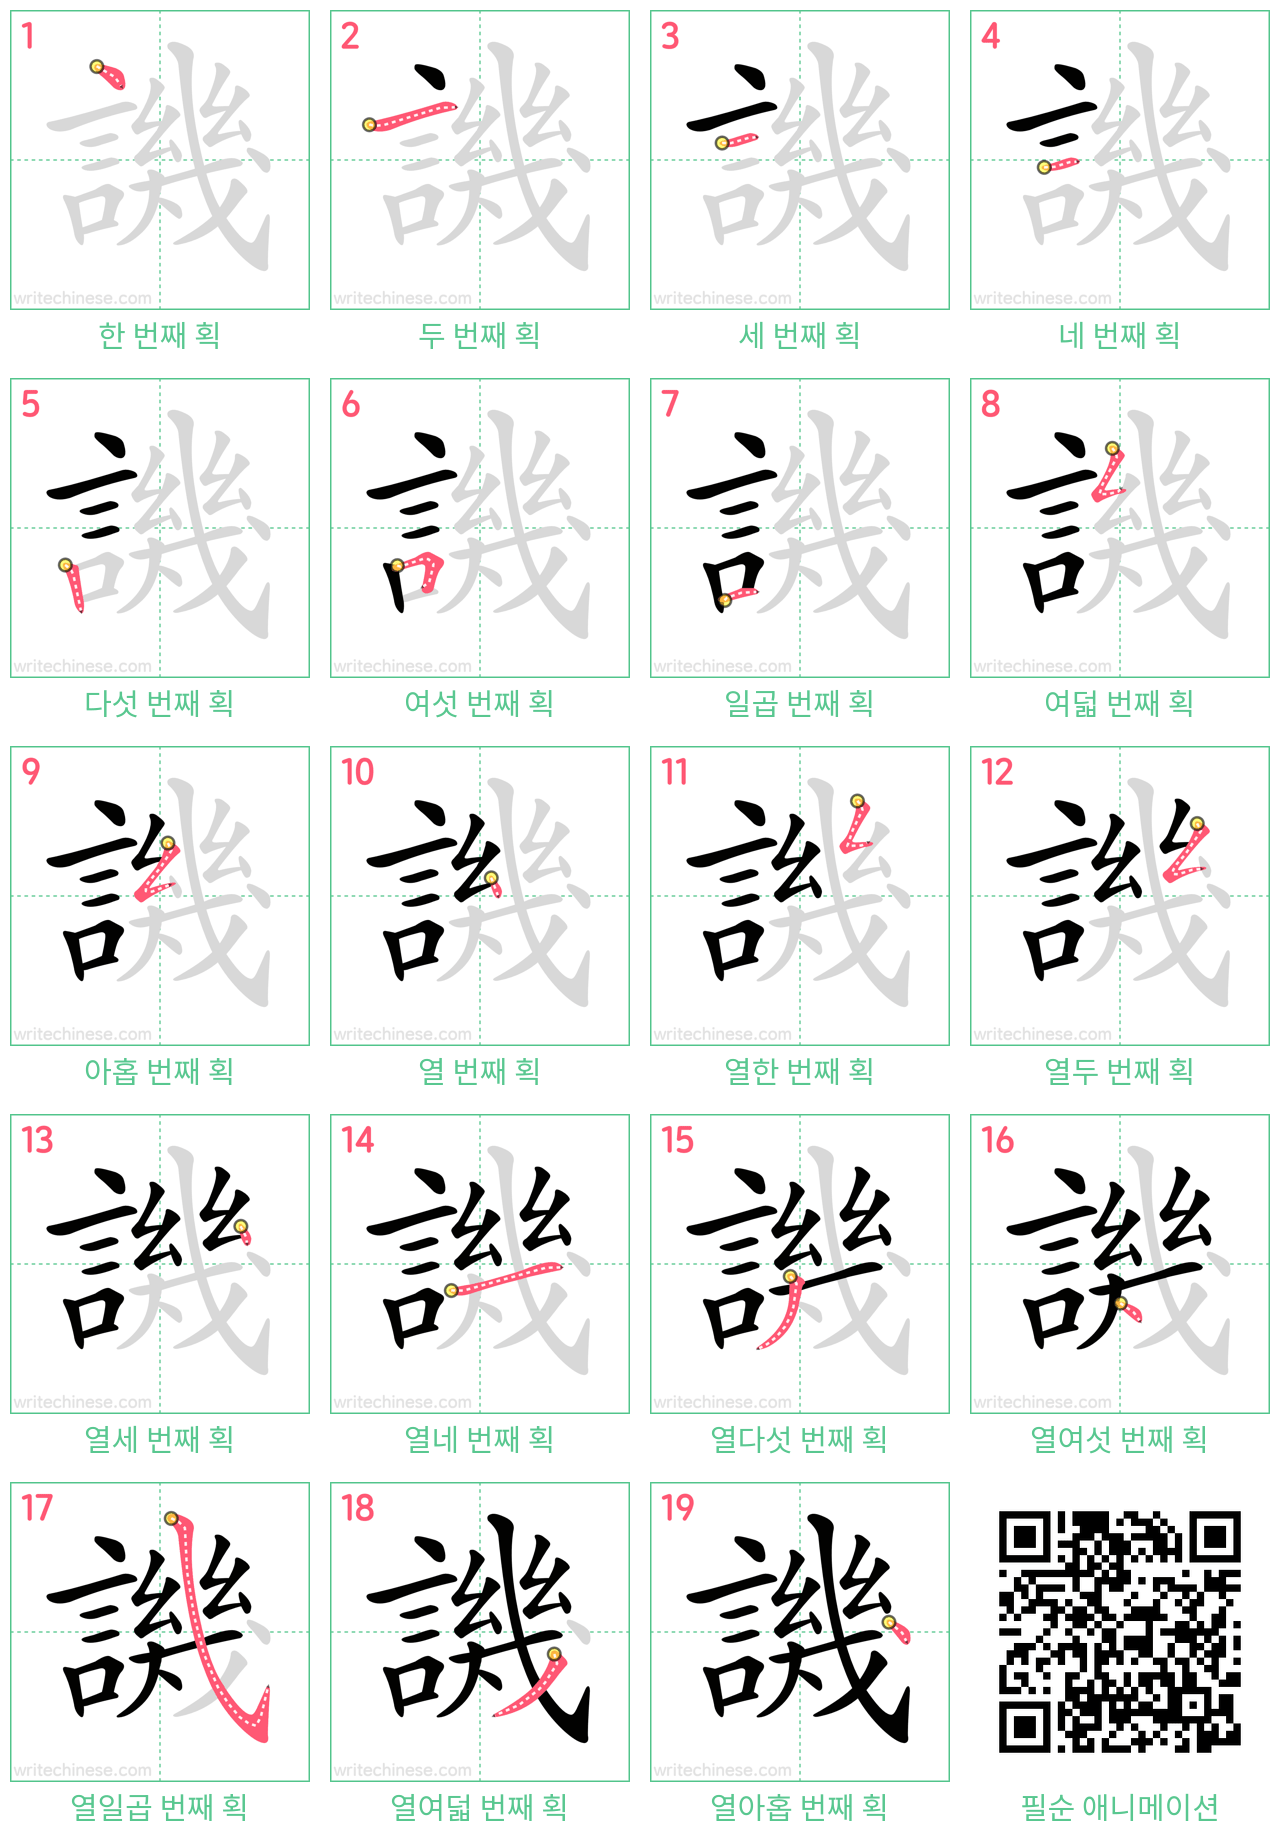 譏 step-by-step stroke order diagrams